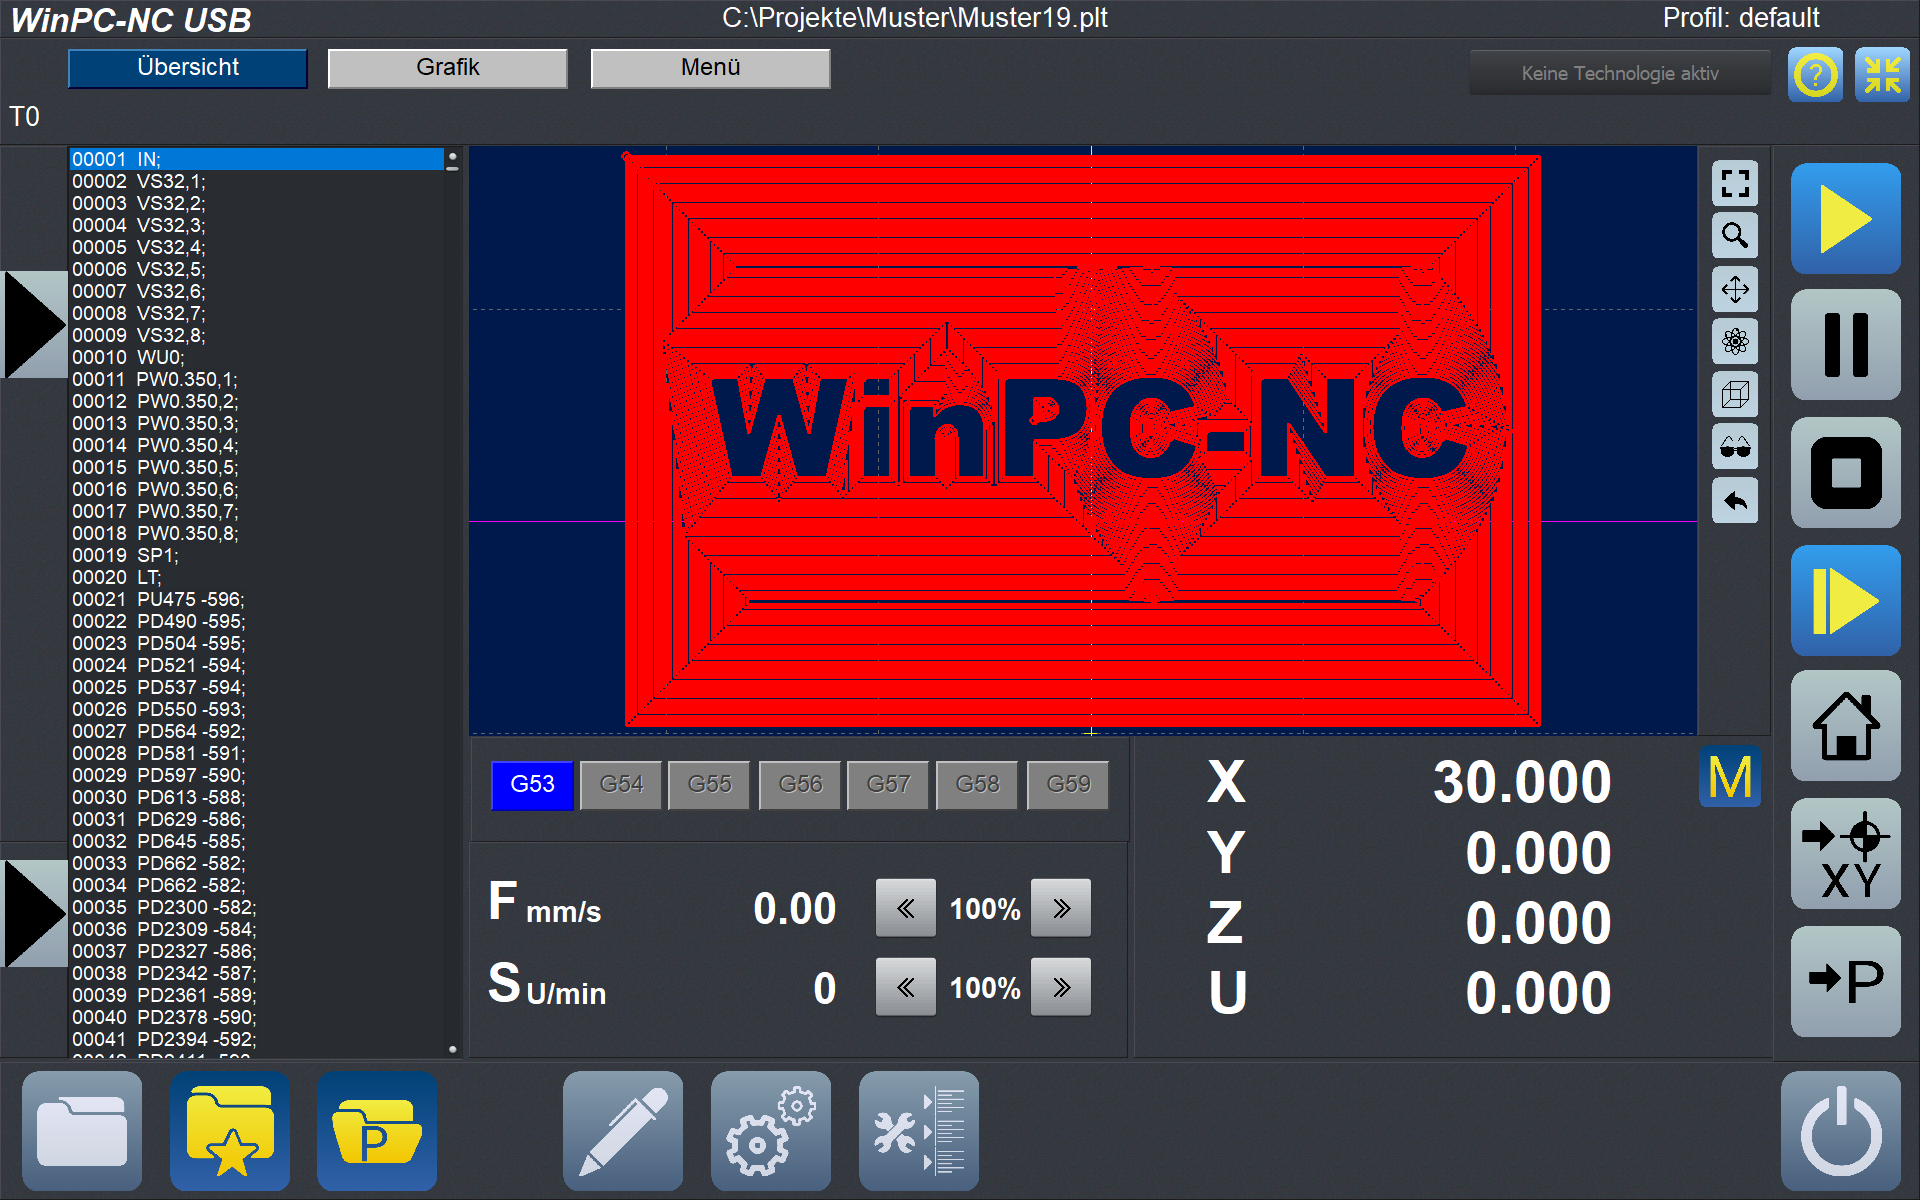 WinPC-NC Professional mit Achscontroller im Standardgehäuse